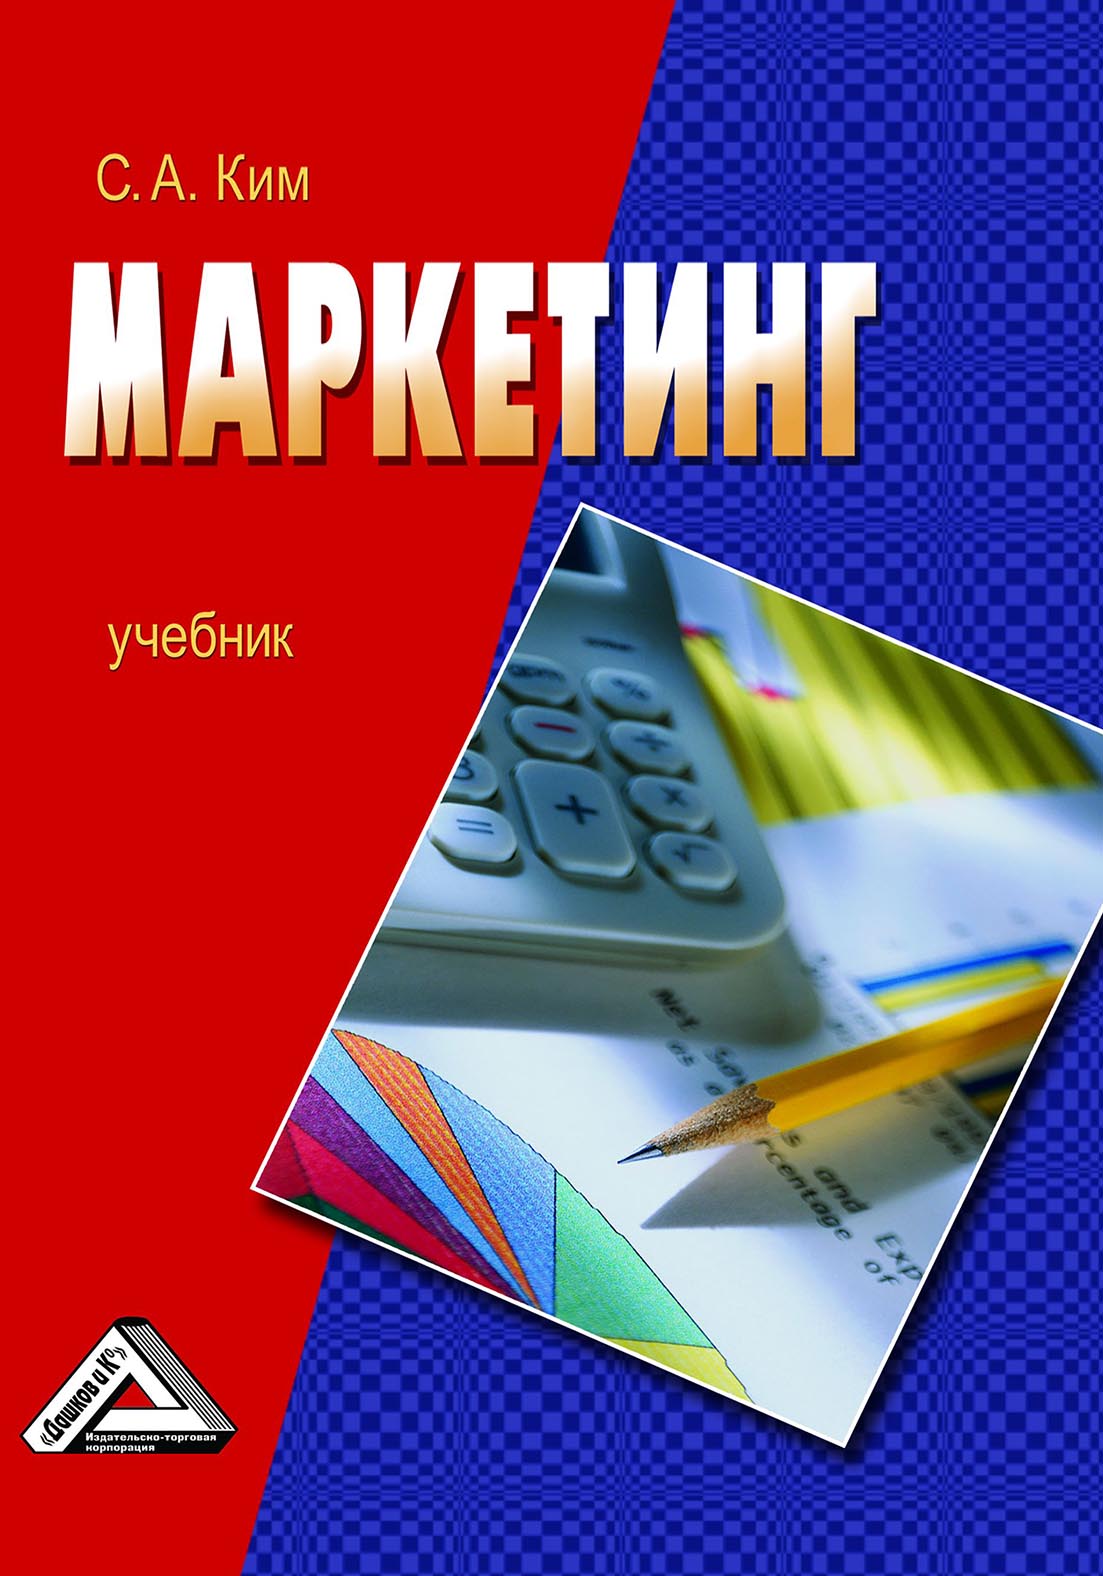 Книга  Маркетинг созданная С. А. Ким может относится к жанру классический маркетинг, маркетинговые исследования и анализ, стратегия маркетинга, управление маркетингом, учебники и пособия для вузов. Стоимость электронной книги Маркетинг с идентификатором 67796888 составляет 399.00 руб.